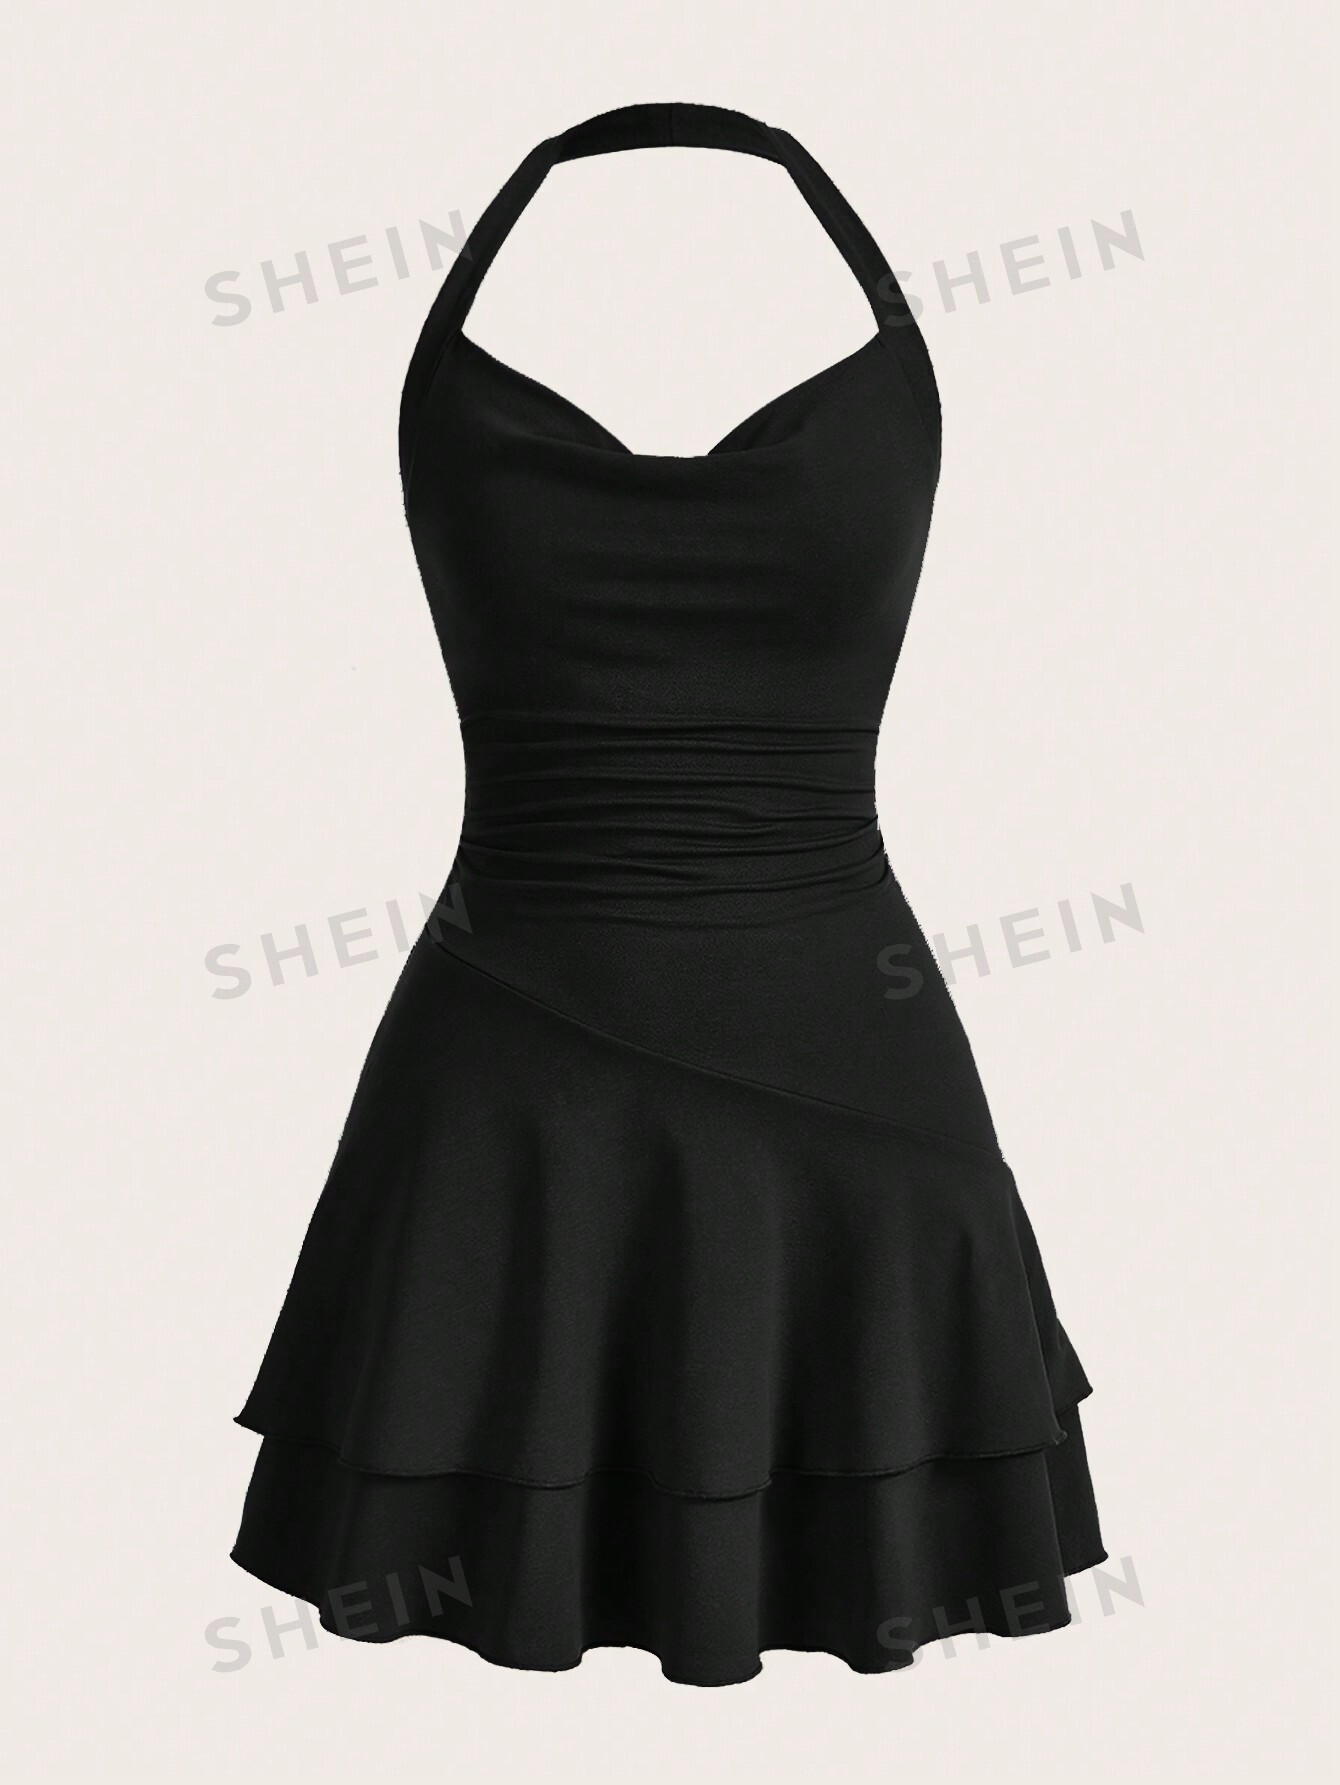 SHEIN MOD однотонное женское платье с бретелькой на шее и многослойным подолом, черный